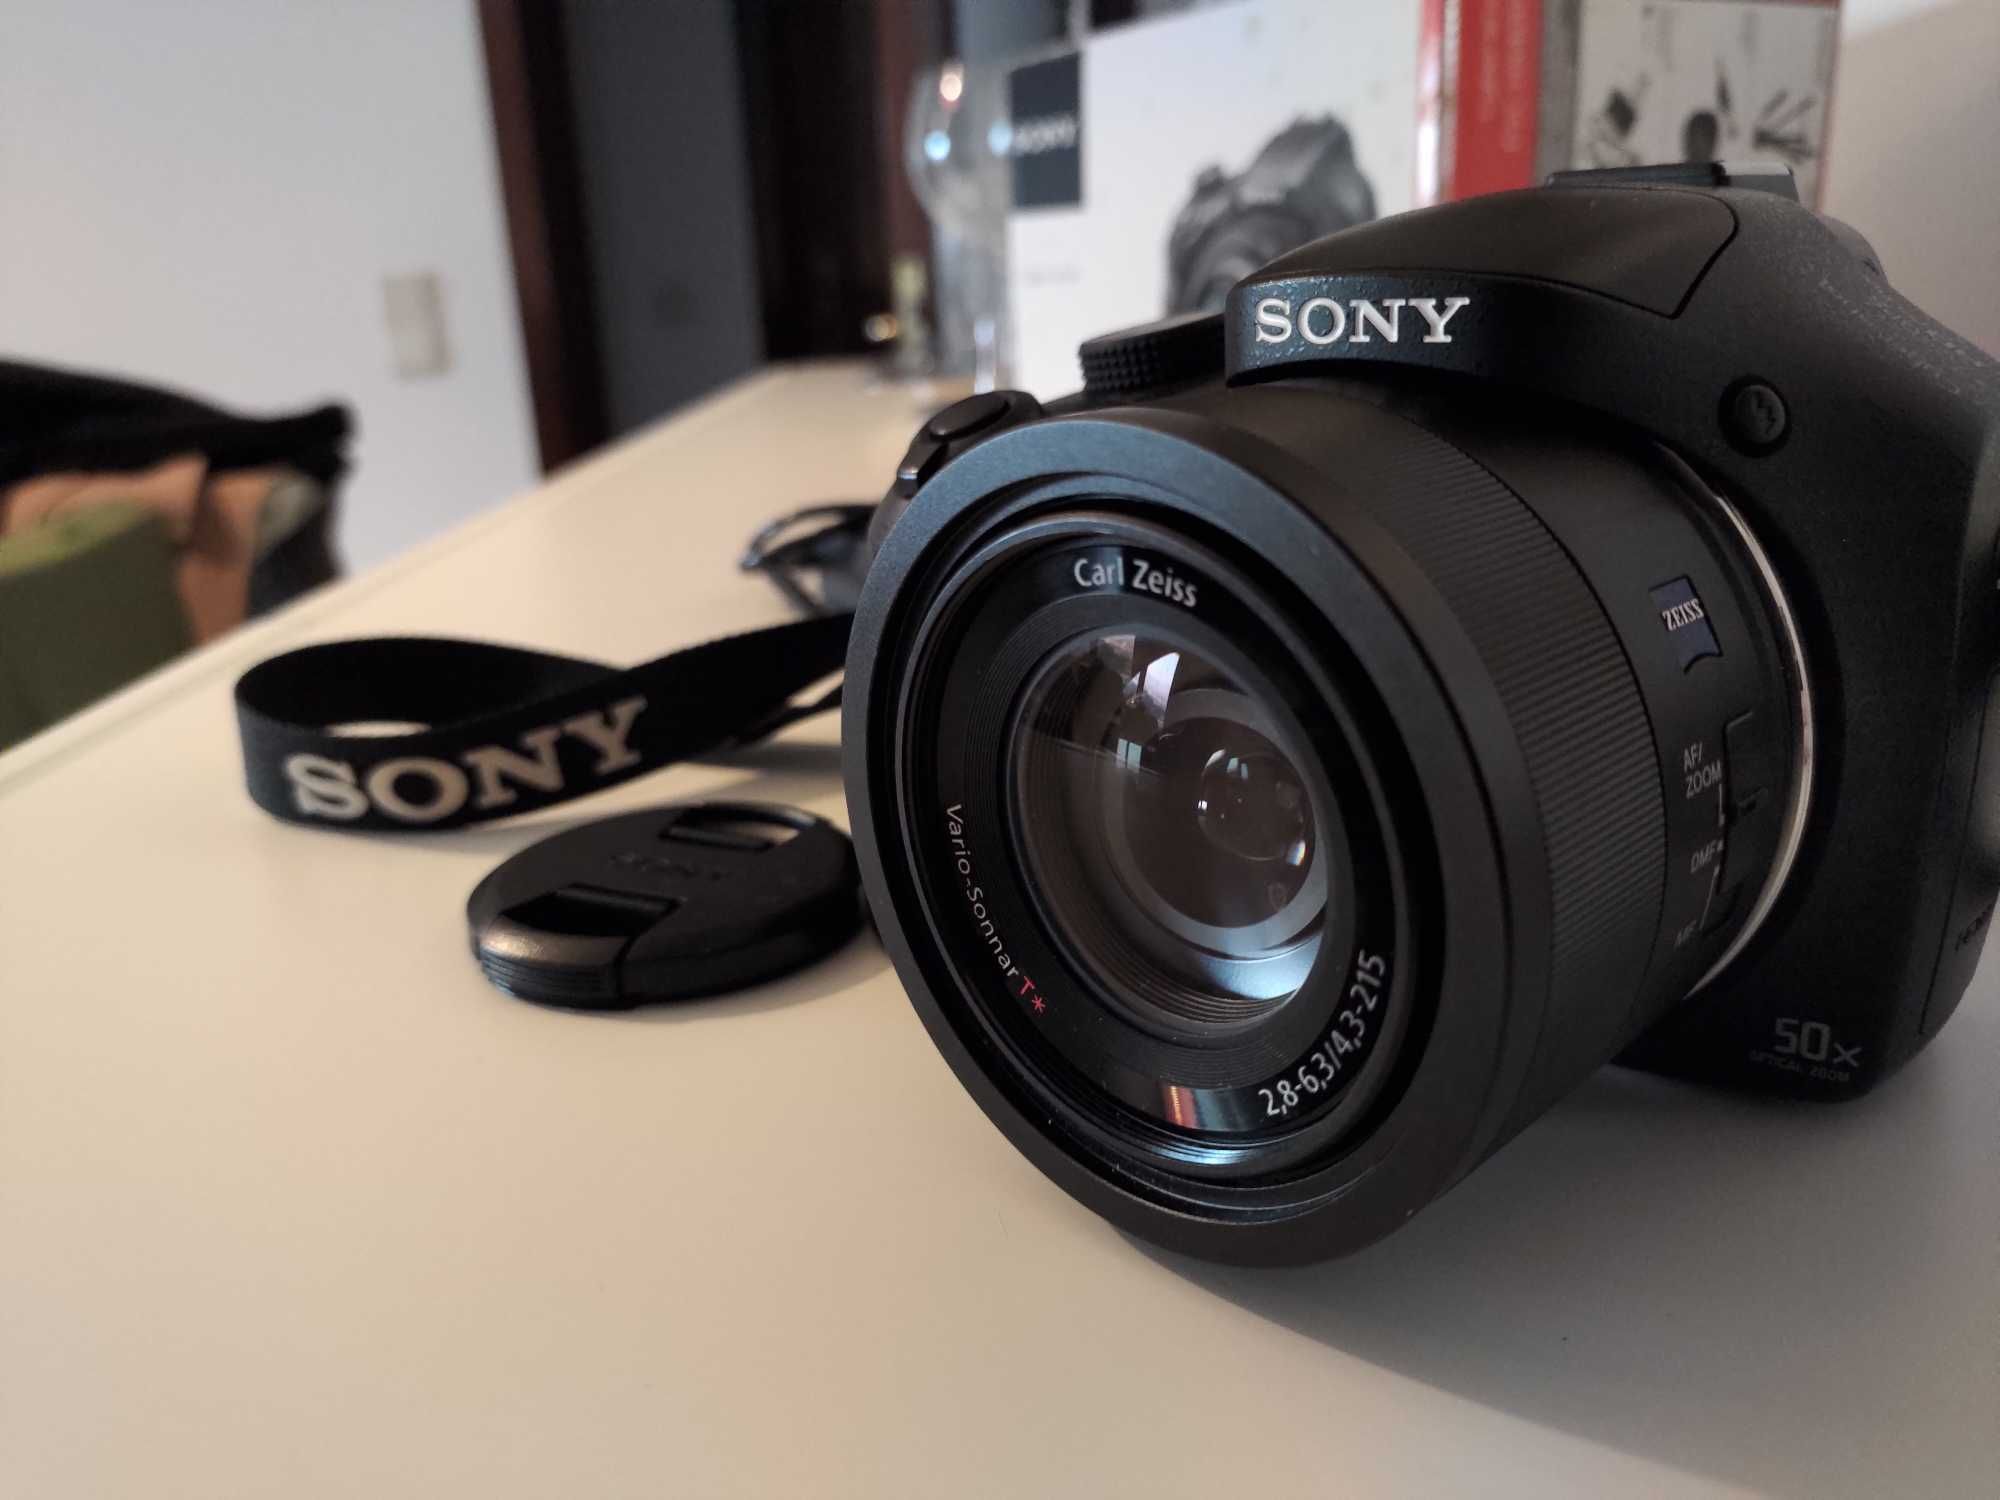 Maquina fotográfica Sony HX-400V 20.4Mpx Compacta